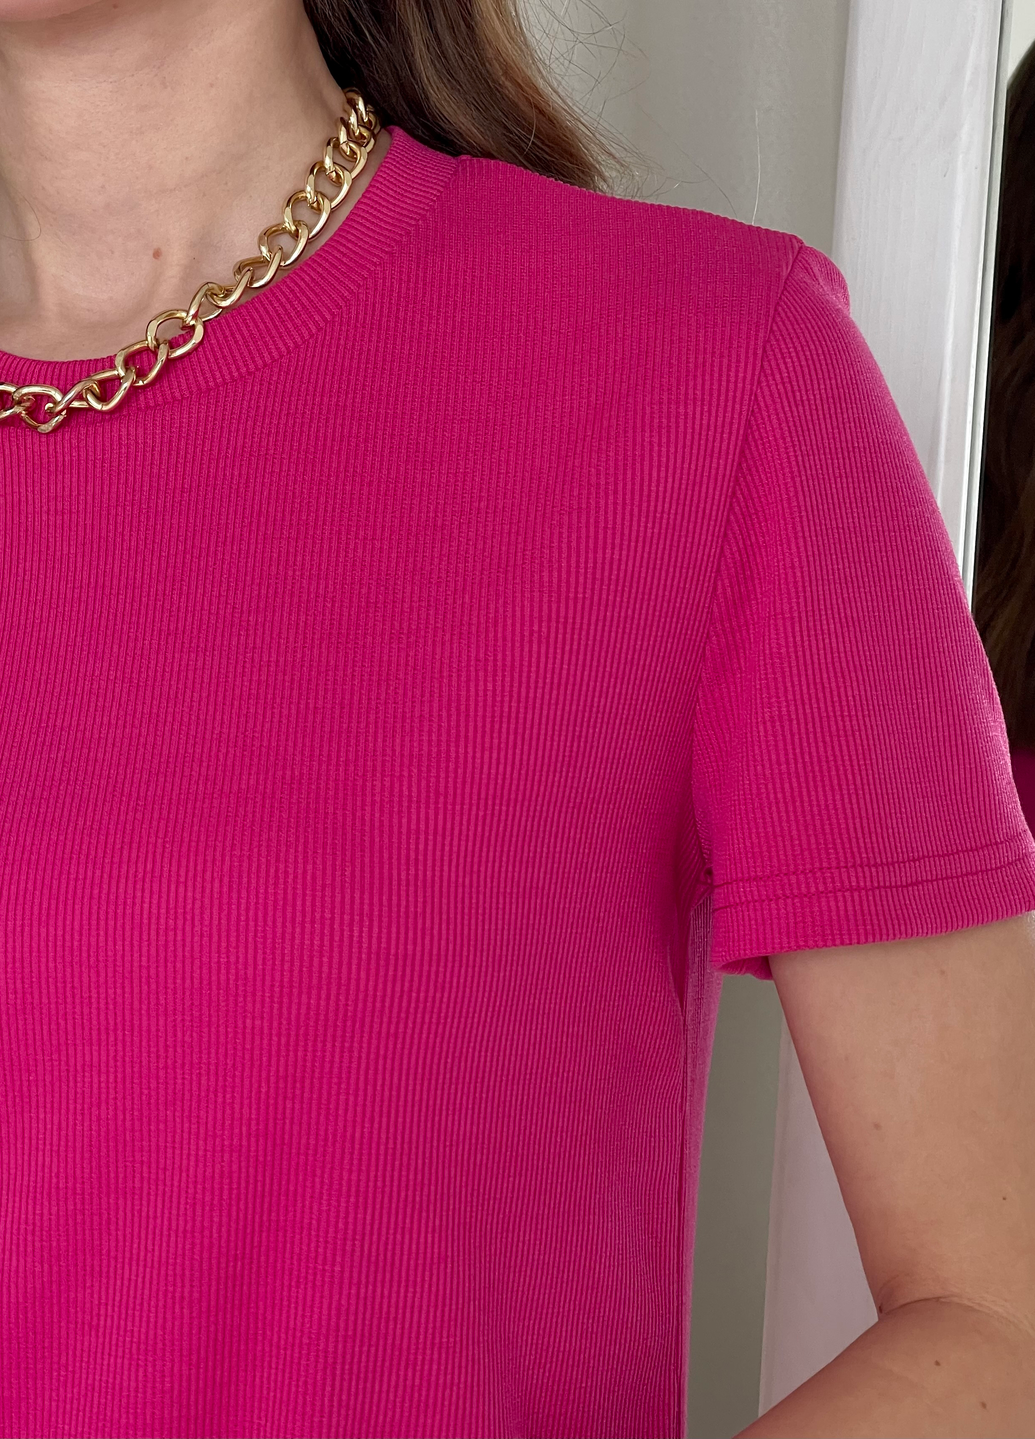 Купить Платье-футболка до колена в рубчик розовое Merlini Милан 700000148 размер 42-44 (S-M) в интернет-магазине